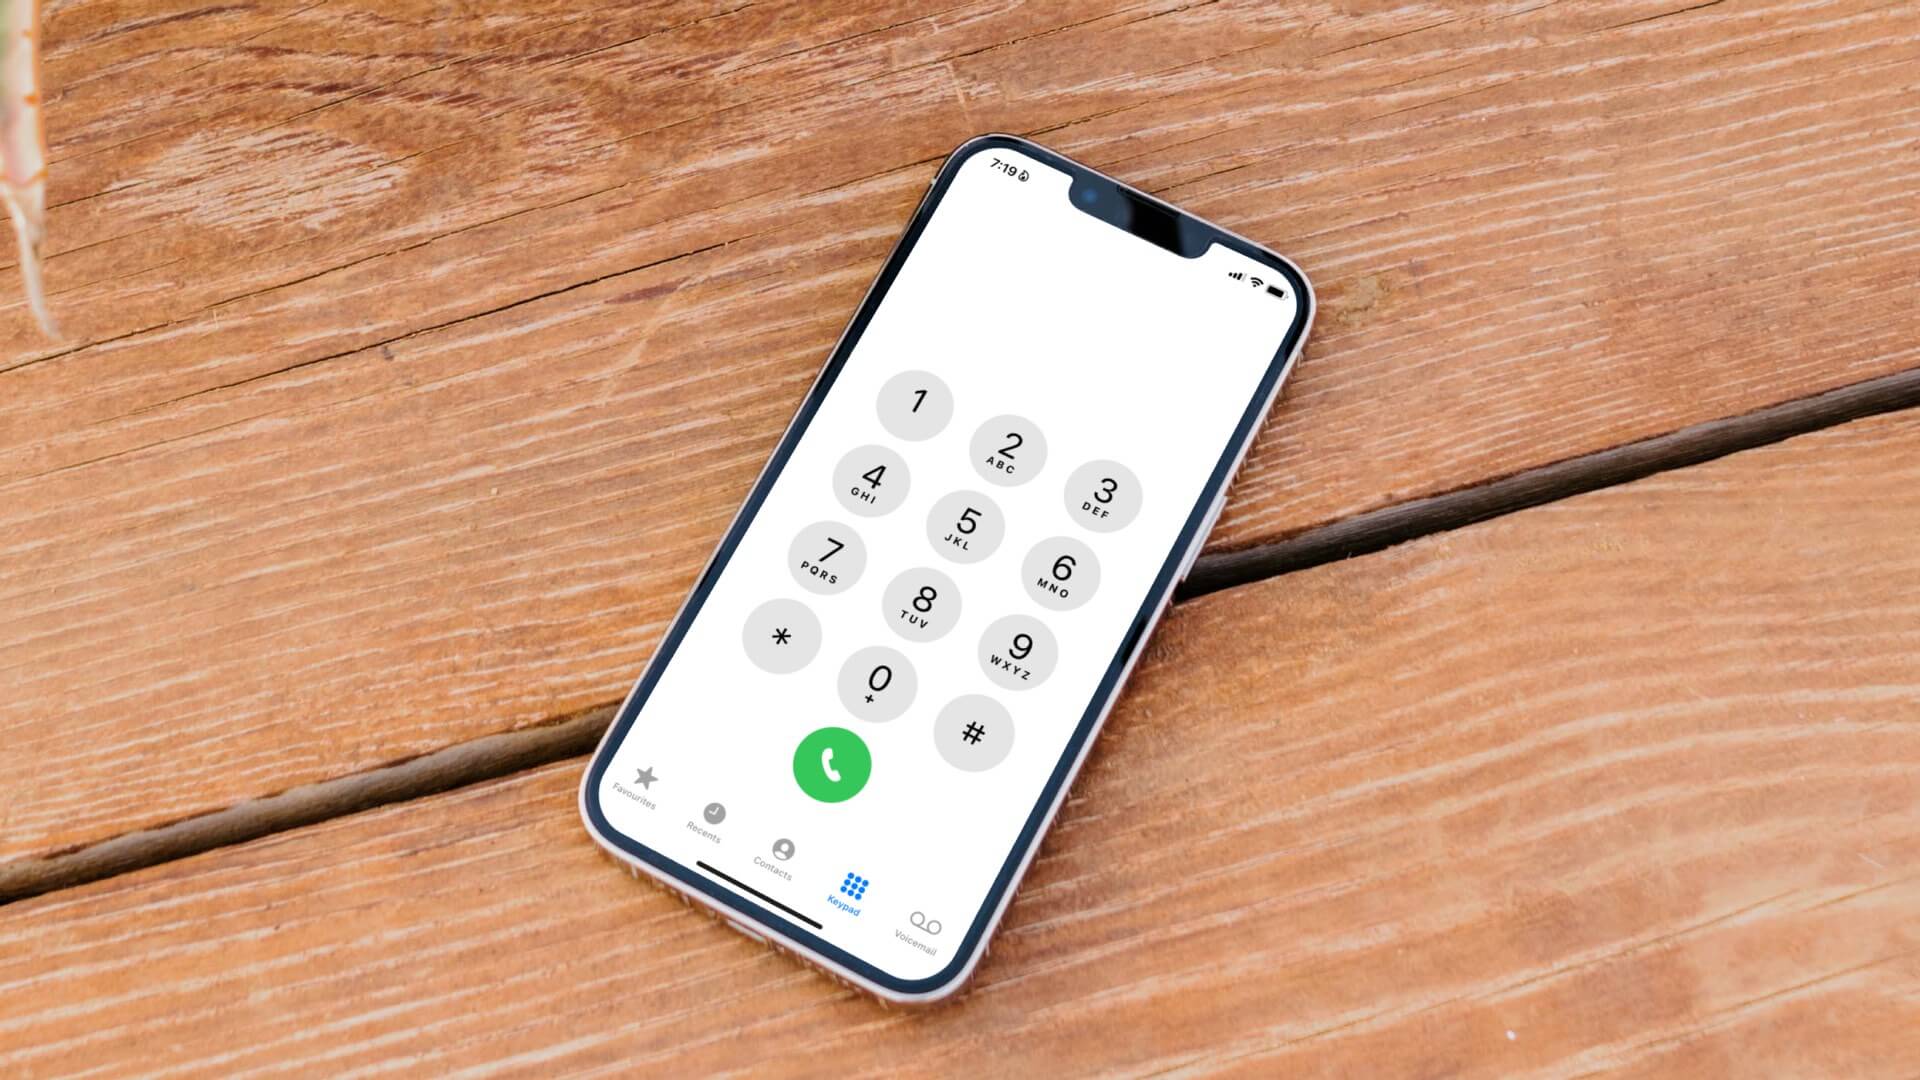 كيفية إصلاح عدم إجراء مكالمات على iPhone في حين يمكن إرسال رسائل نصية - %categories